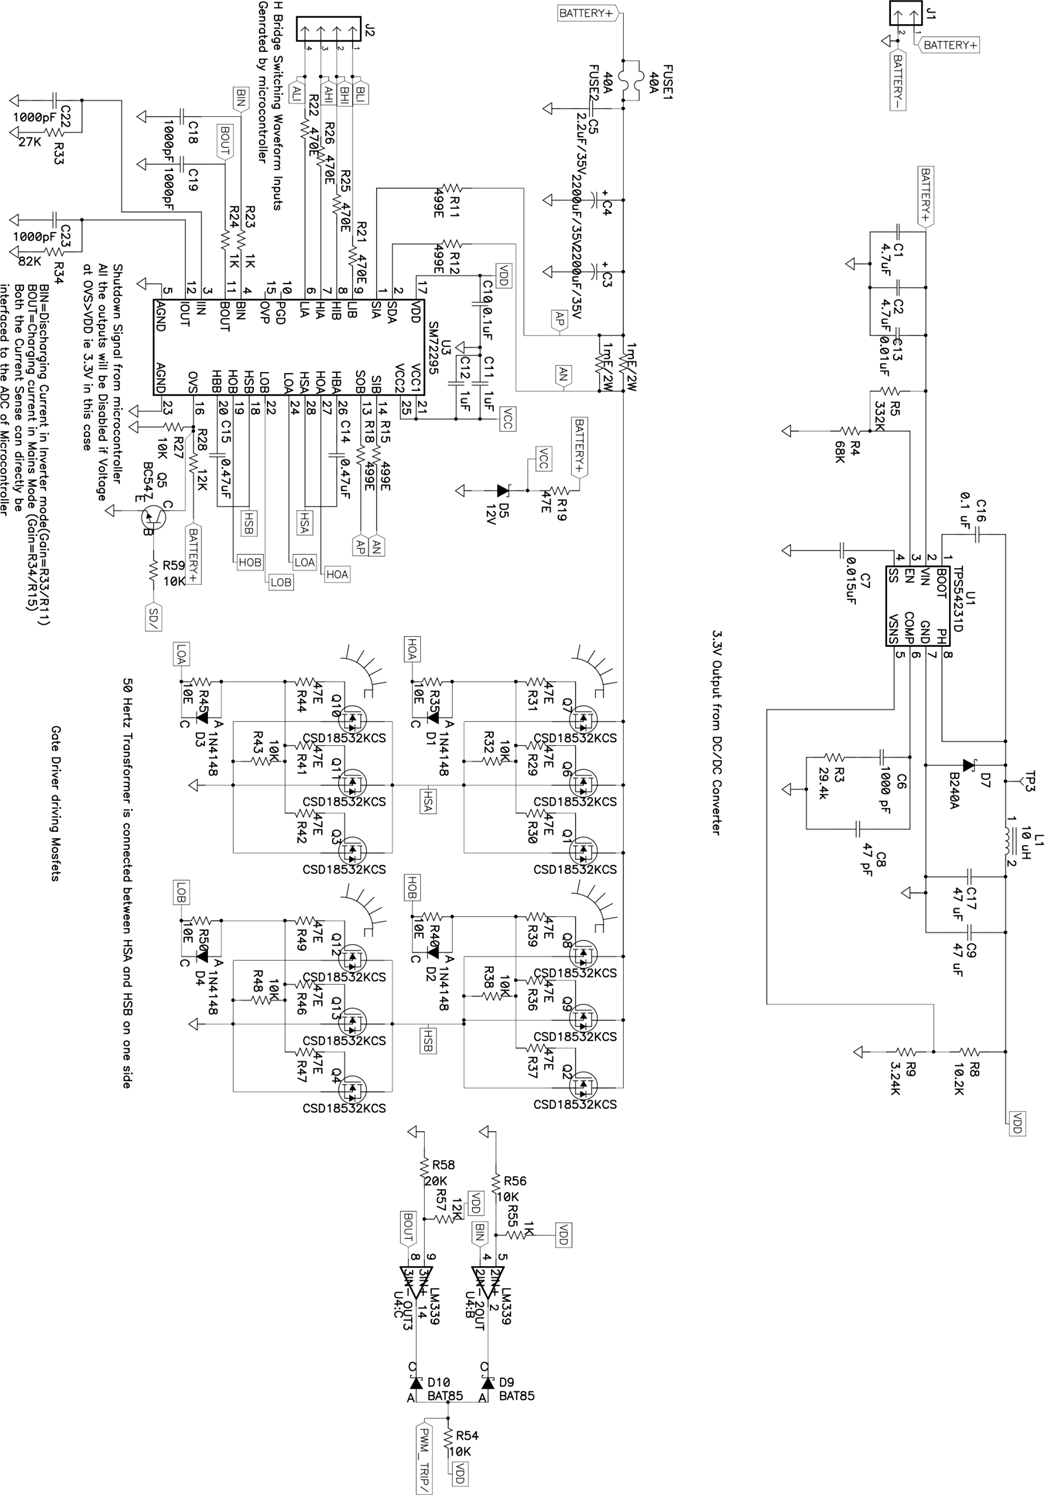 mainboard-schematic-01-slaa602.png